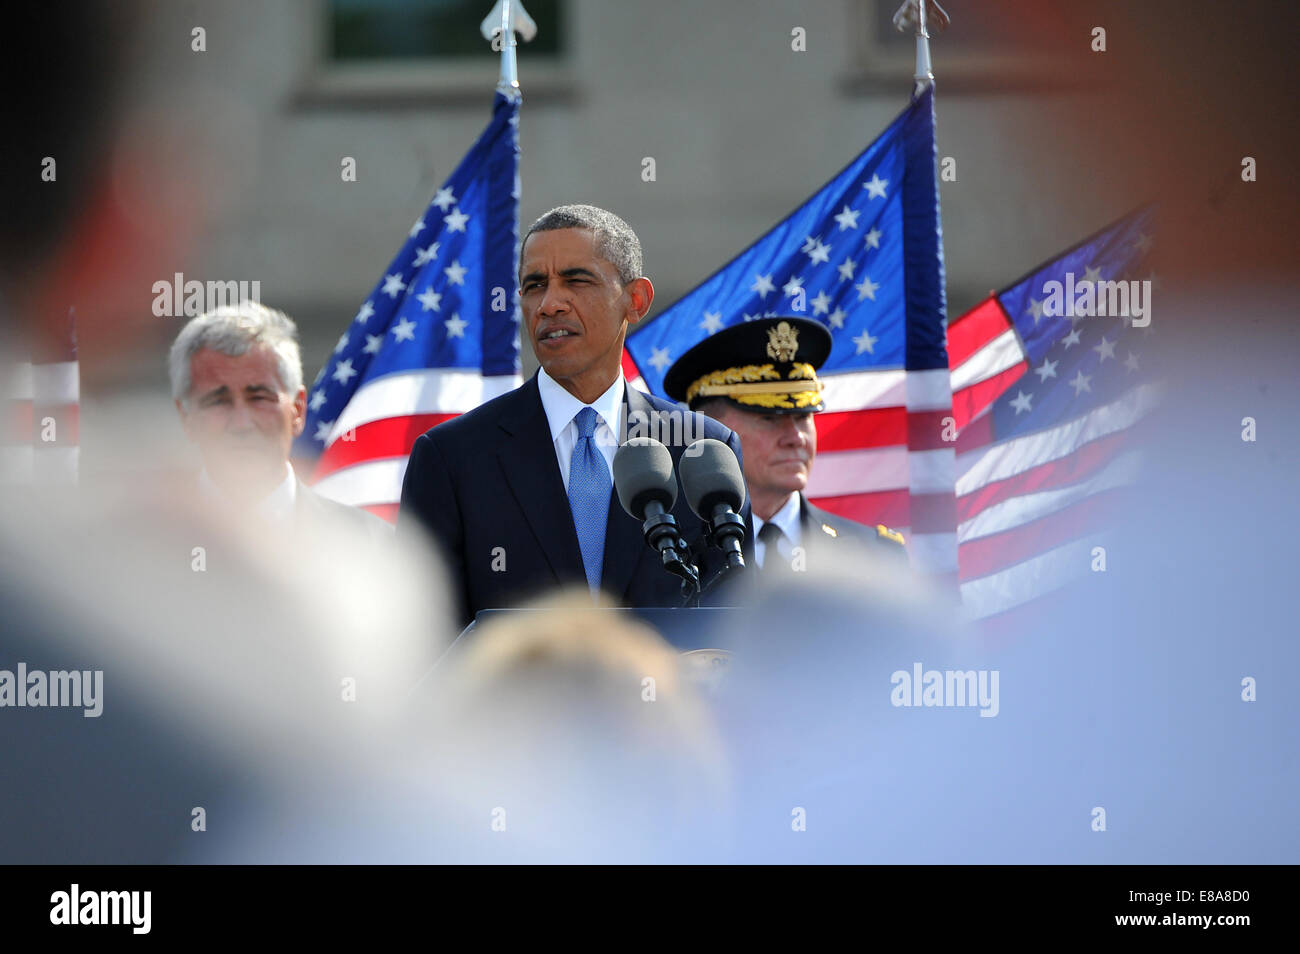 Il presidente Barack Obama parla durante il 9/11 cerimonia commemorativa presso il National 9/11 Pentagon Memorial presso il Pentagono di Arlington, Virginia, Sett. 11, 2014. I terroristi hanno dirottato quattro aerei passeggeri sett. 11, 2001. Due dei velivoli sono stati deliberatamente cra Foto Stock